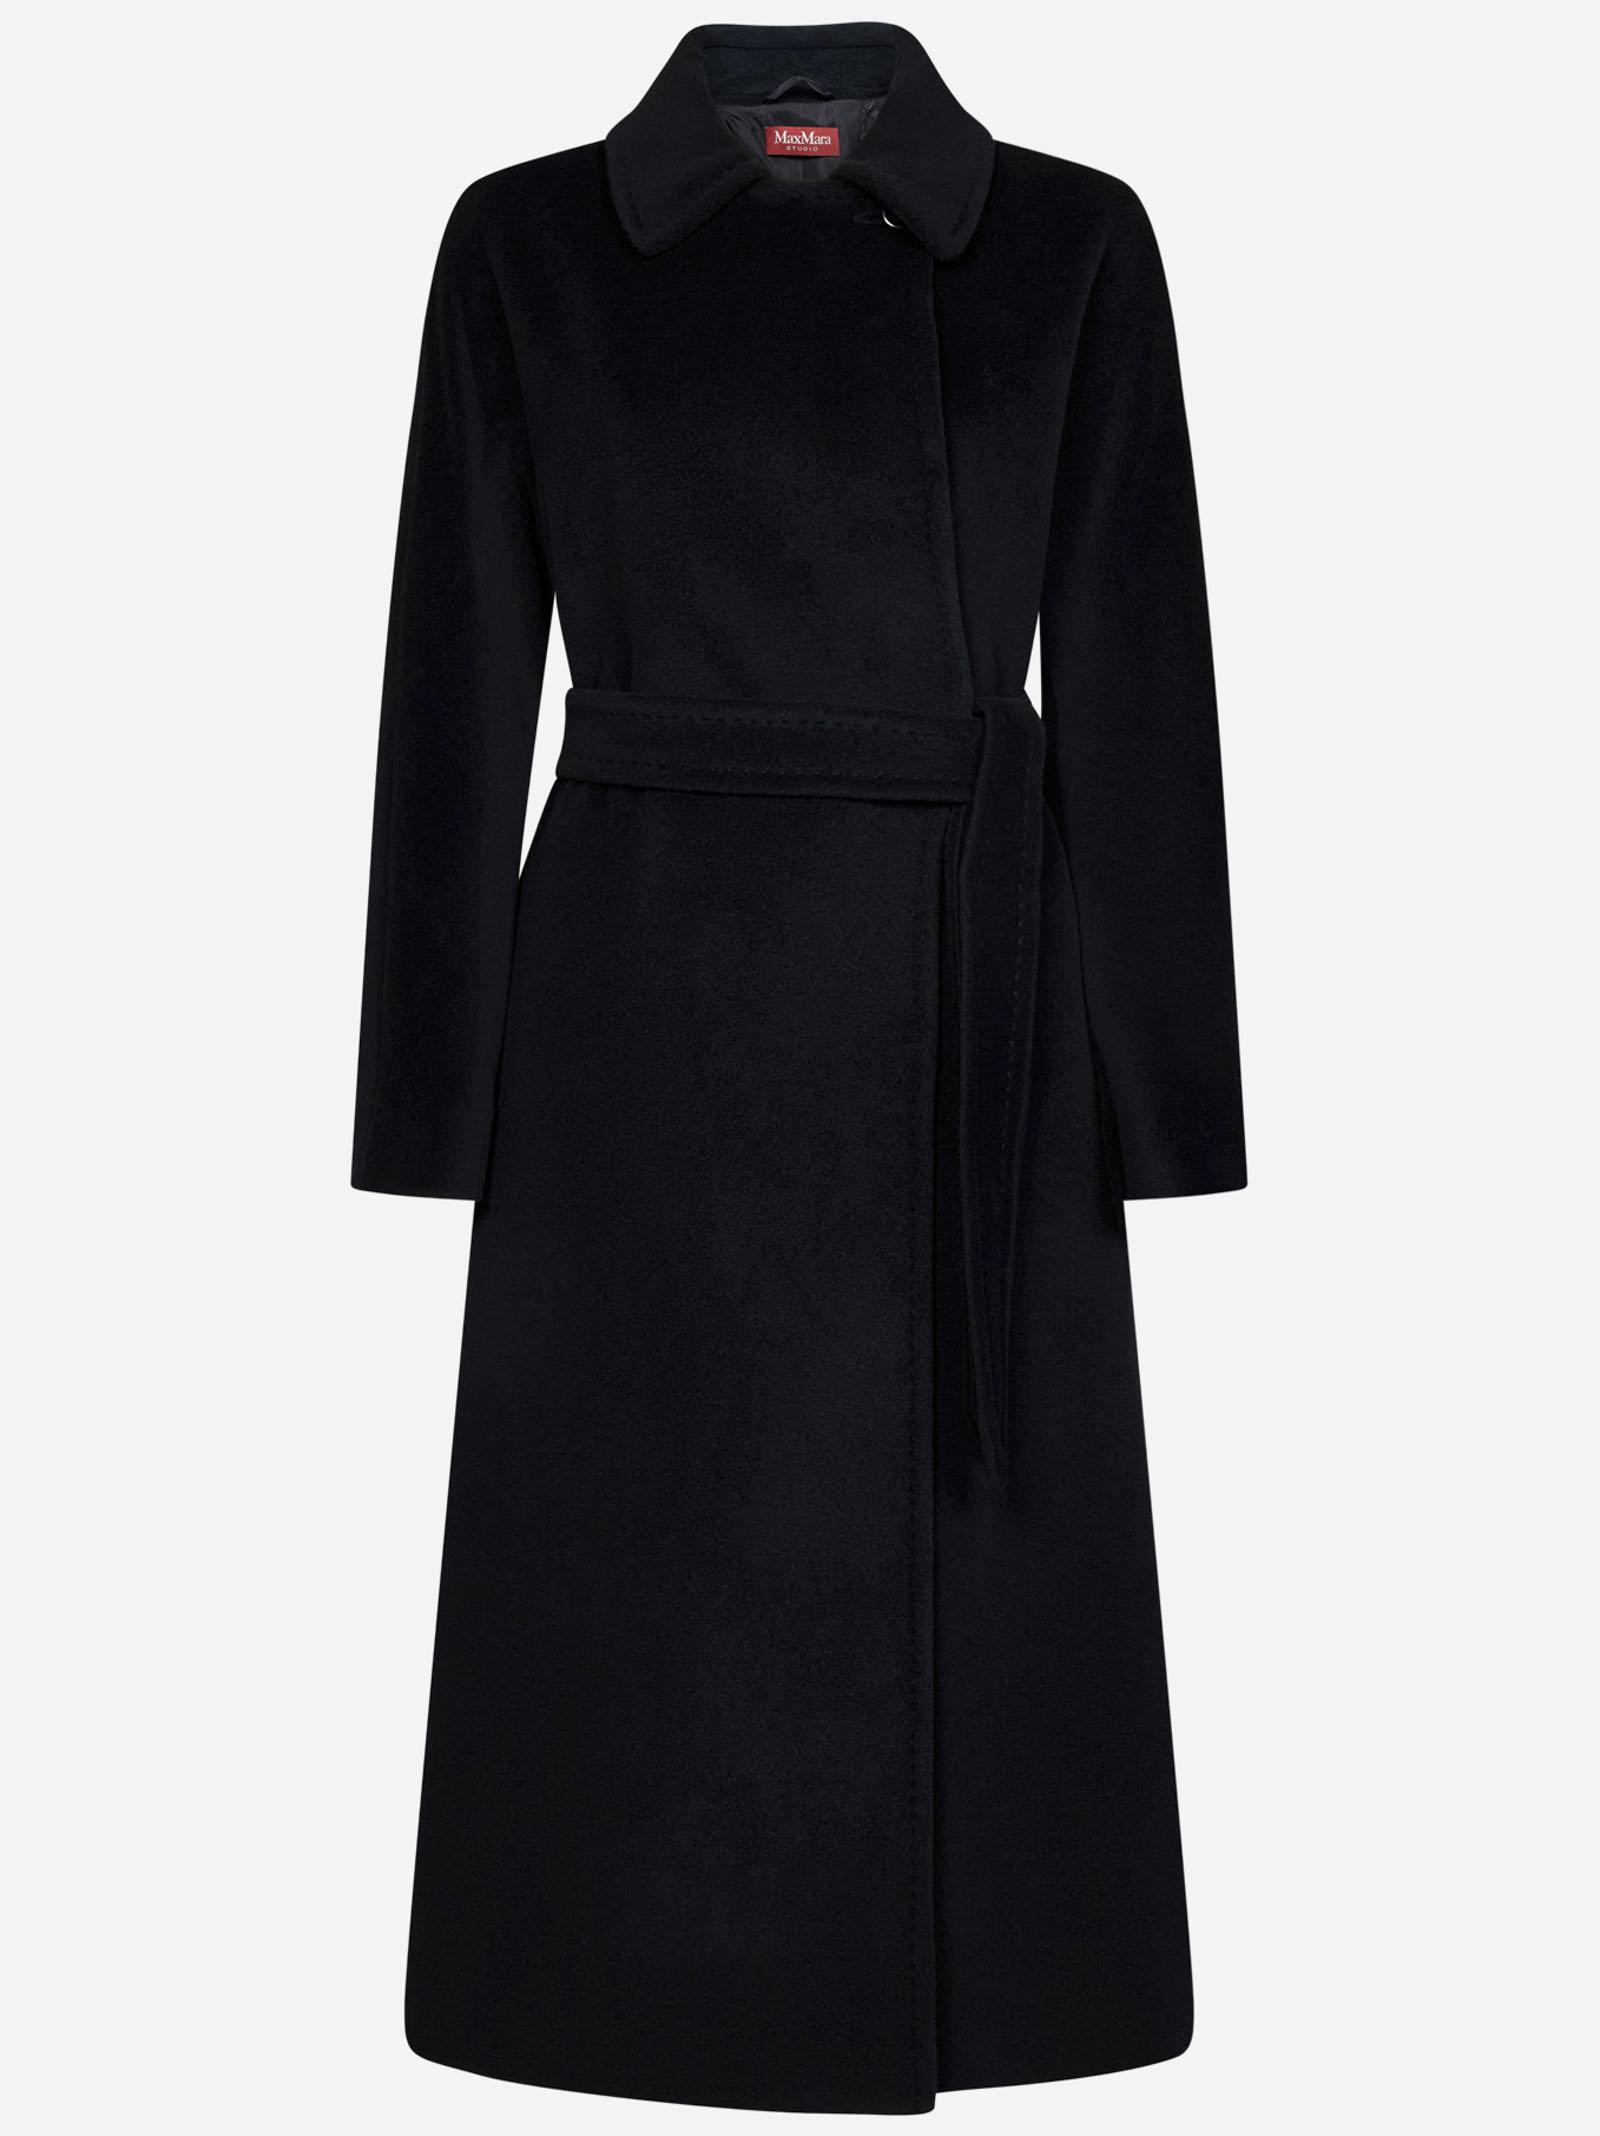 Max Mara Studio Coat in Black | Lyst